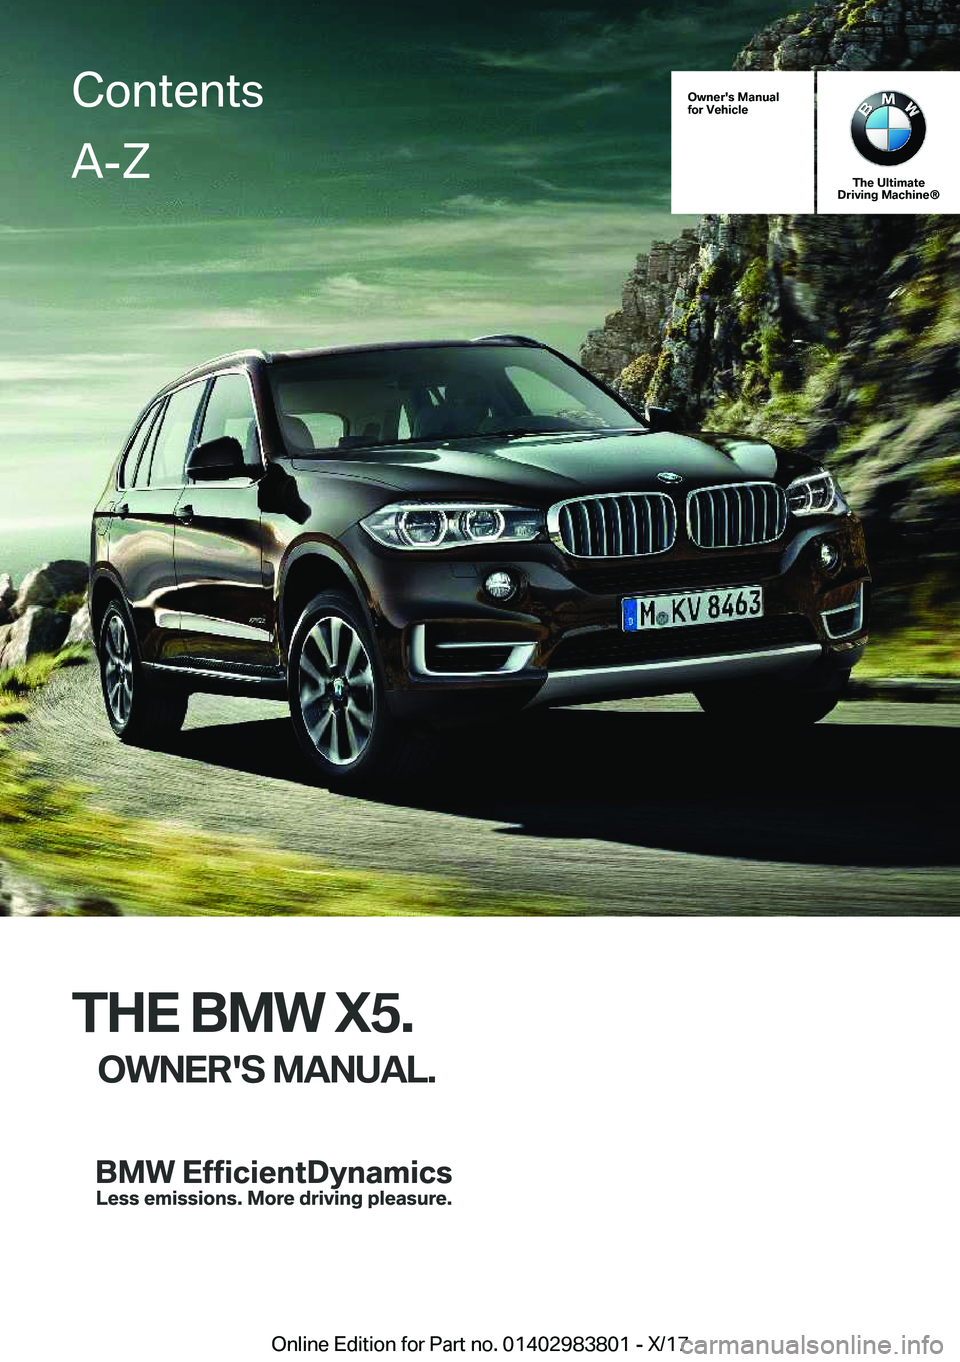 BMW X5 2018  Owners Manual �O�w�n�e�r�'�s��M�a�n�u�a�l
�f�o�r��V�e�h�i�c�l�e
�T�h�e��U�l�t�i�m�a�t�e
�D�r�i�v�i�n�g��M�a�c�h�i�n�e�n
�T�H�E��B�M�W��X�5�.
�O�W�N�E�R�'�S��M�A�N�U�A�L�.
�C�o�n�t�e�n�t�s�A�-�Z
�O�n�